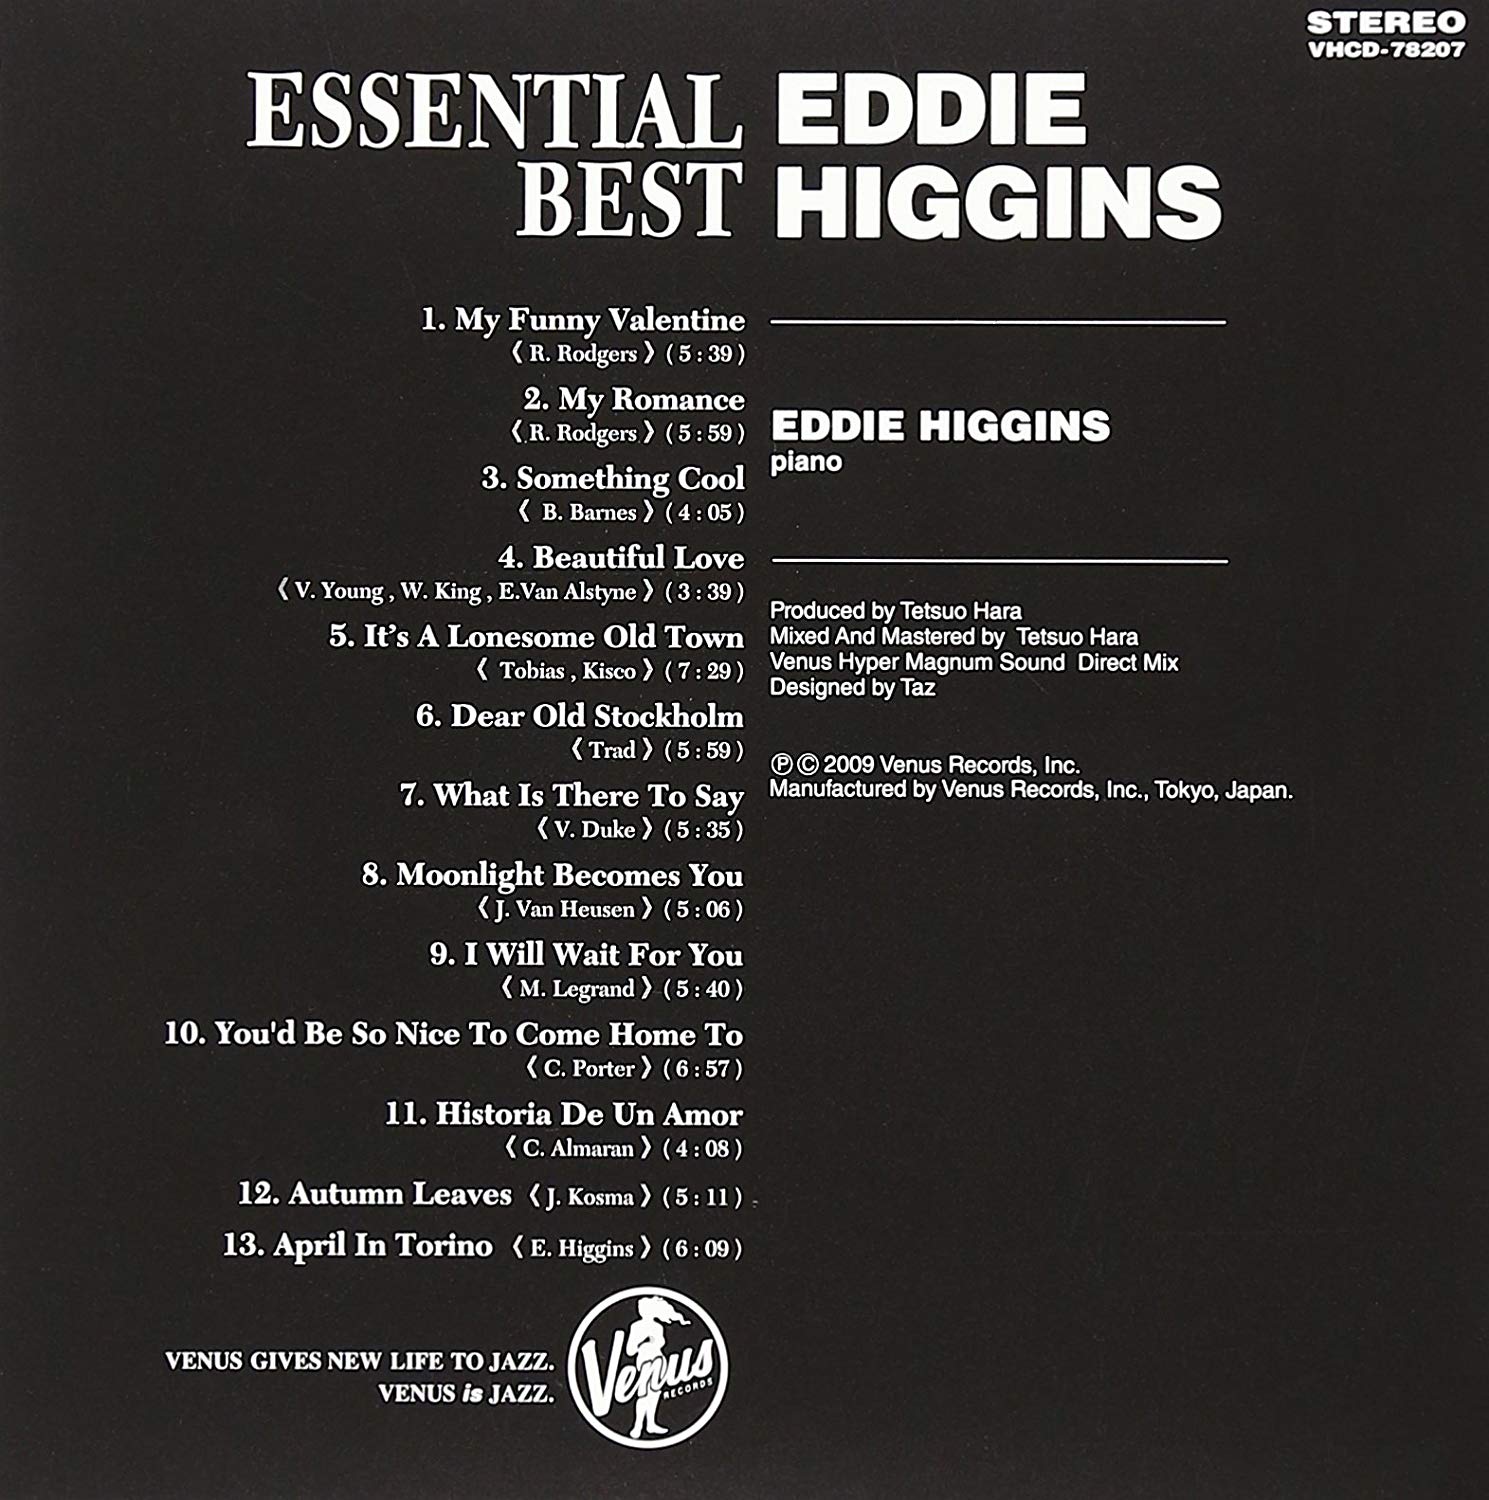 Eddie Higgins (에디 히긴스) - Essential Best